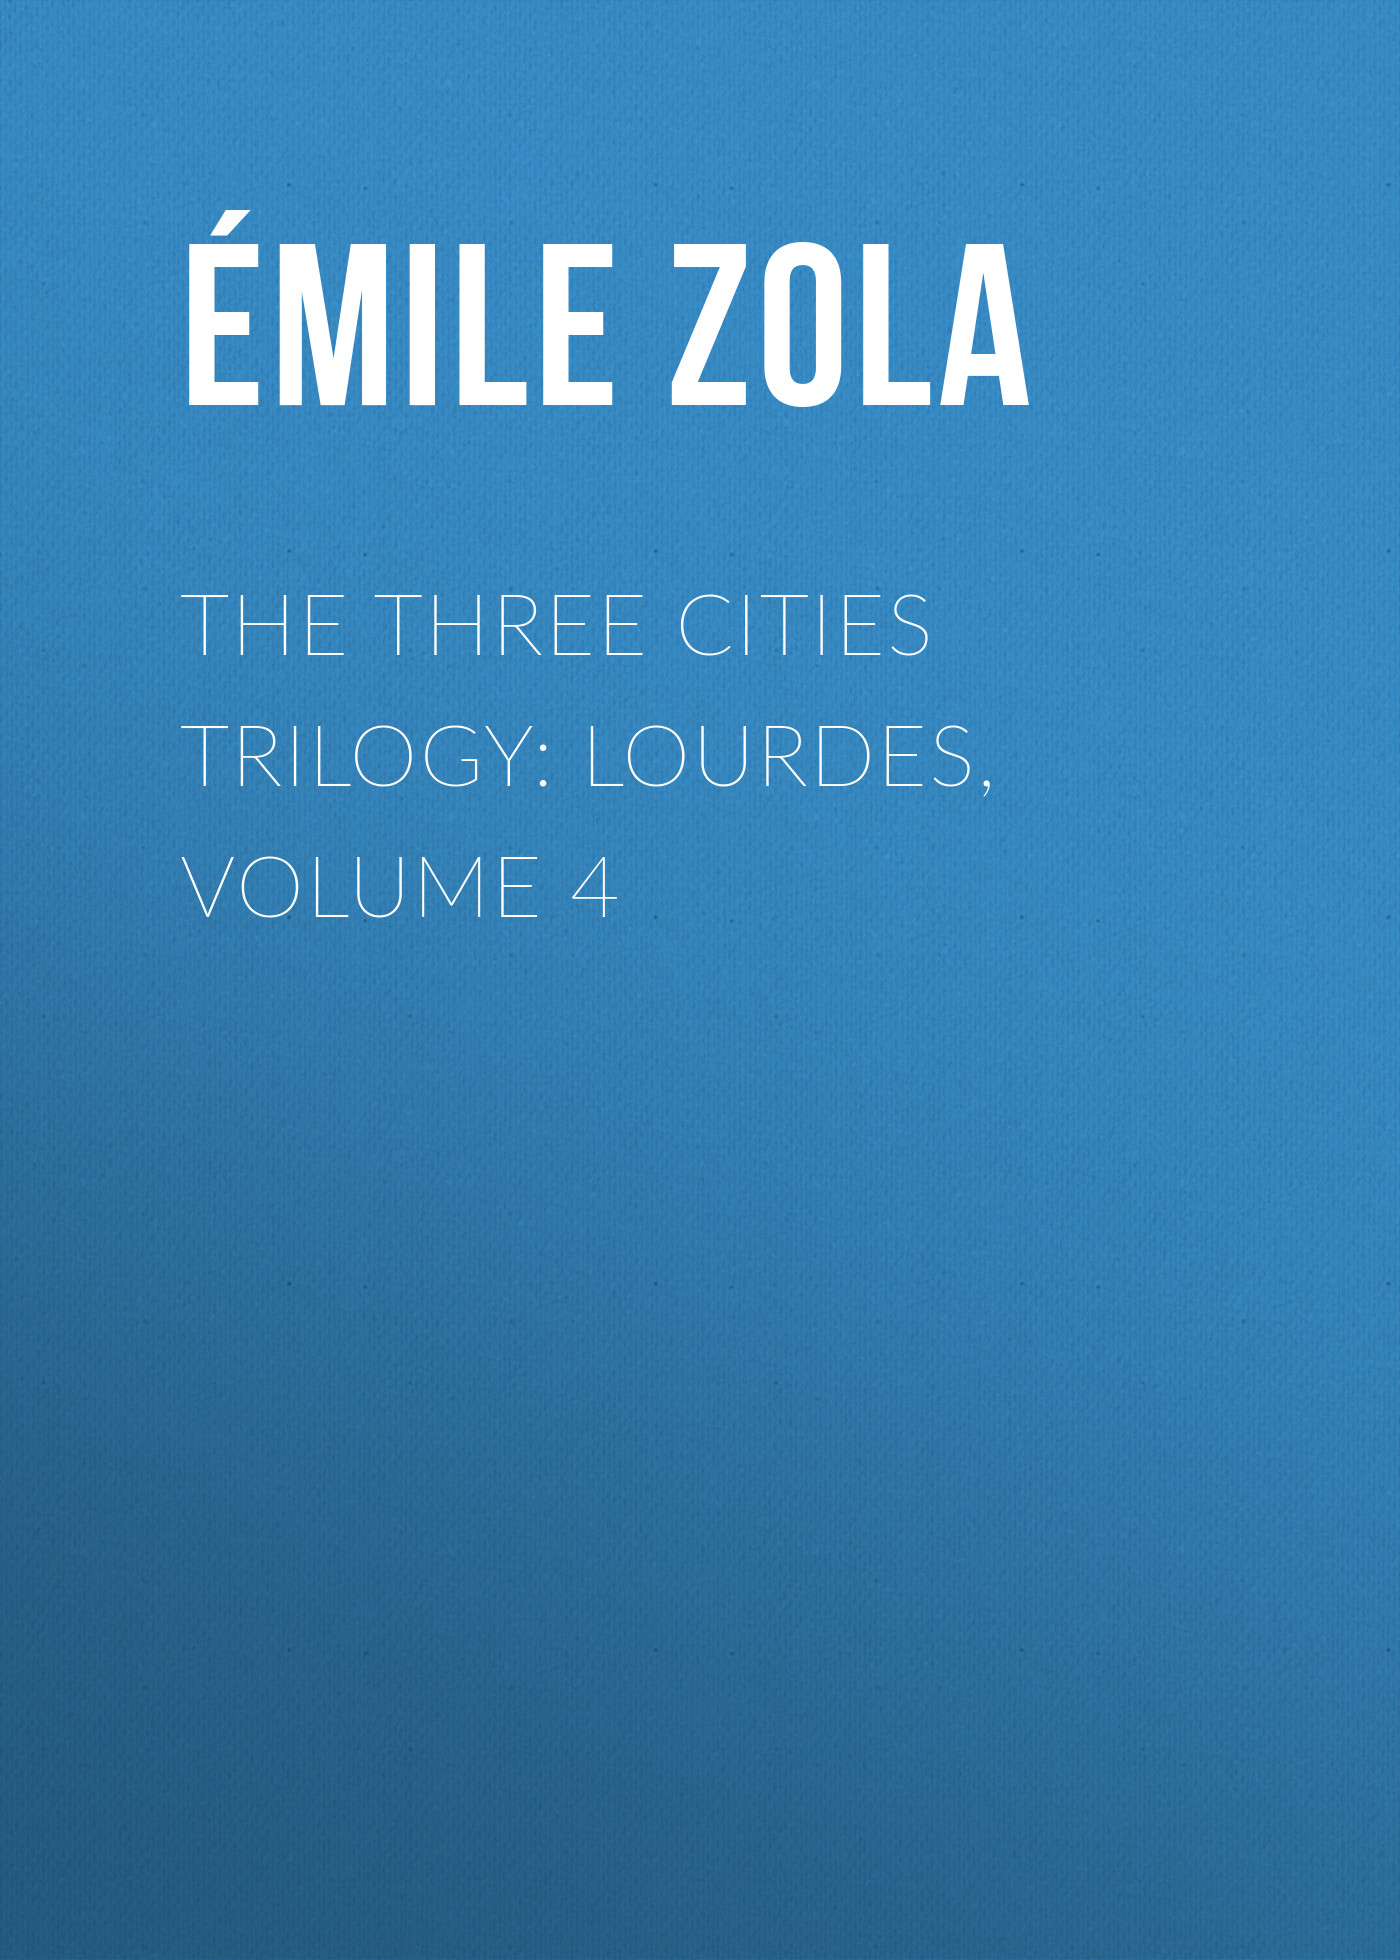 Книга The Three Cities Trilogy: Lourdes, Volume 4 из серии , созданная Émile Zola, может относится к жанру Литература 19 века, Зарубежная старинная литература, Зарубежная классика. Стоимость электронной книги The Three Cities Trilogy: Lourdes, Volume 4 с идентификатором 25559556 составляет 0 руб.